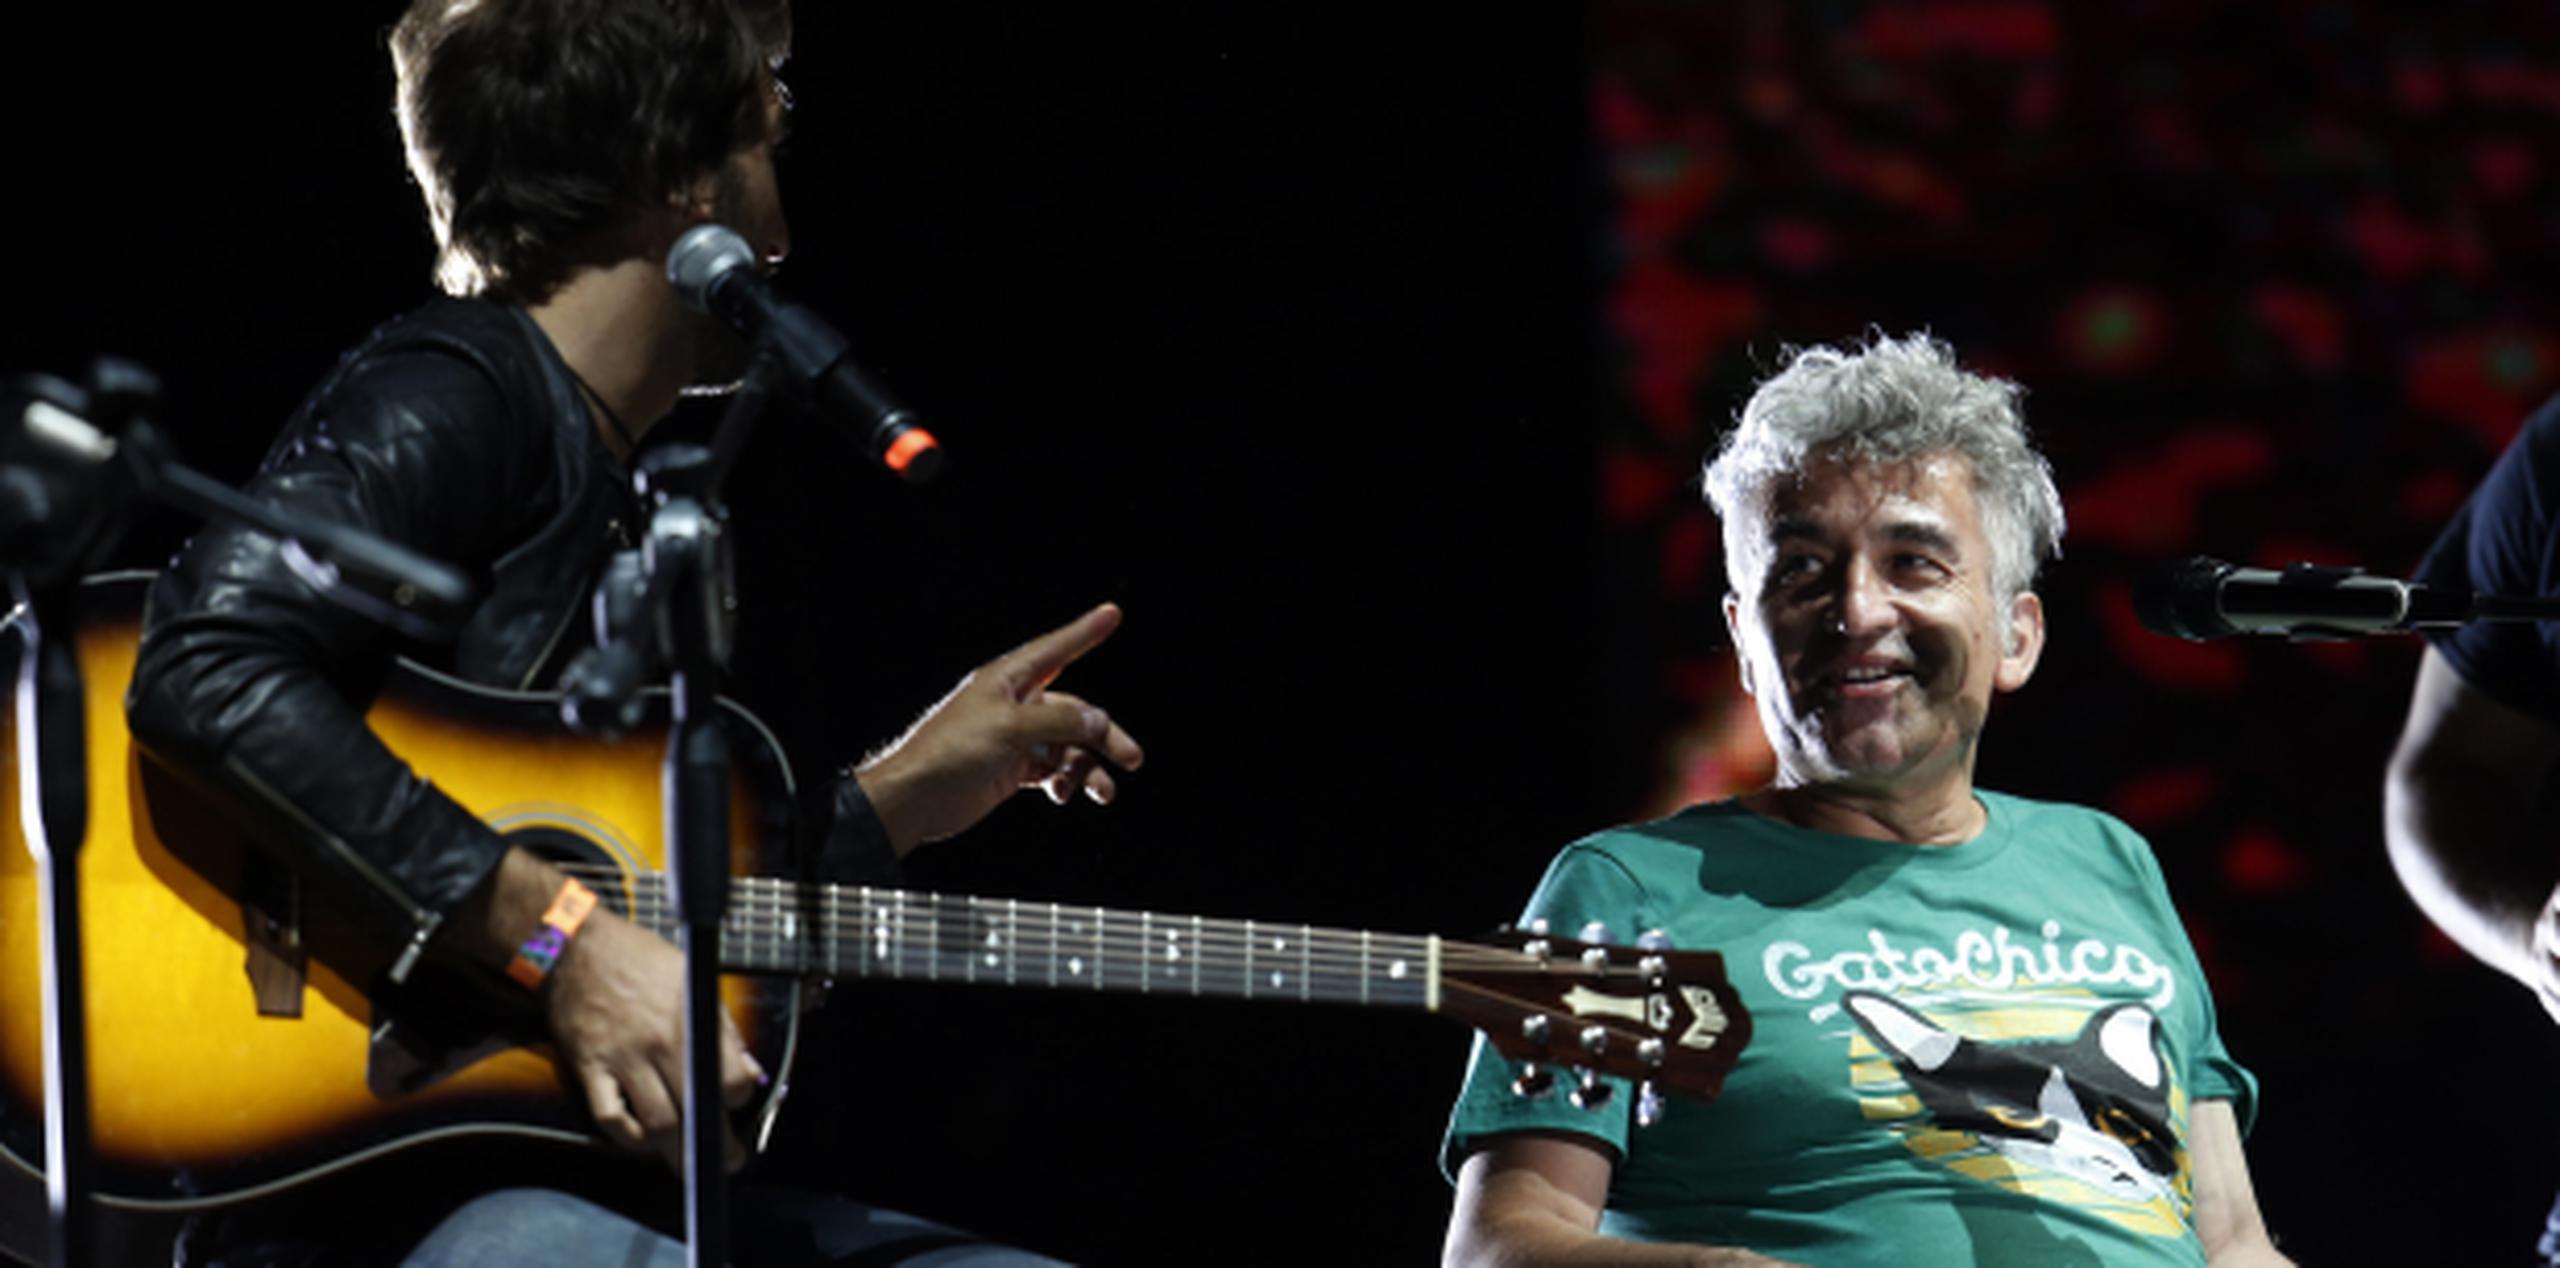 González sonríe durante una porción del concierto en el que decenas de miles de personas corearon sus canciones. (EFE)